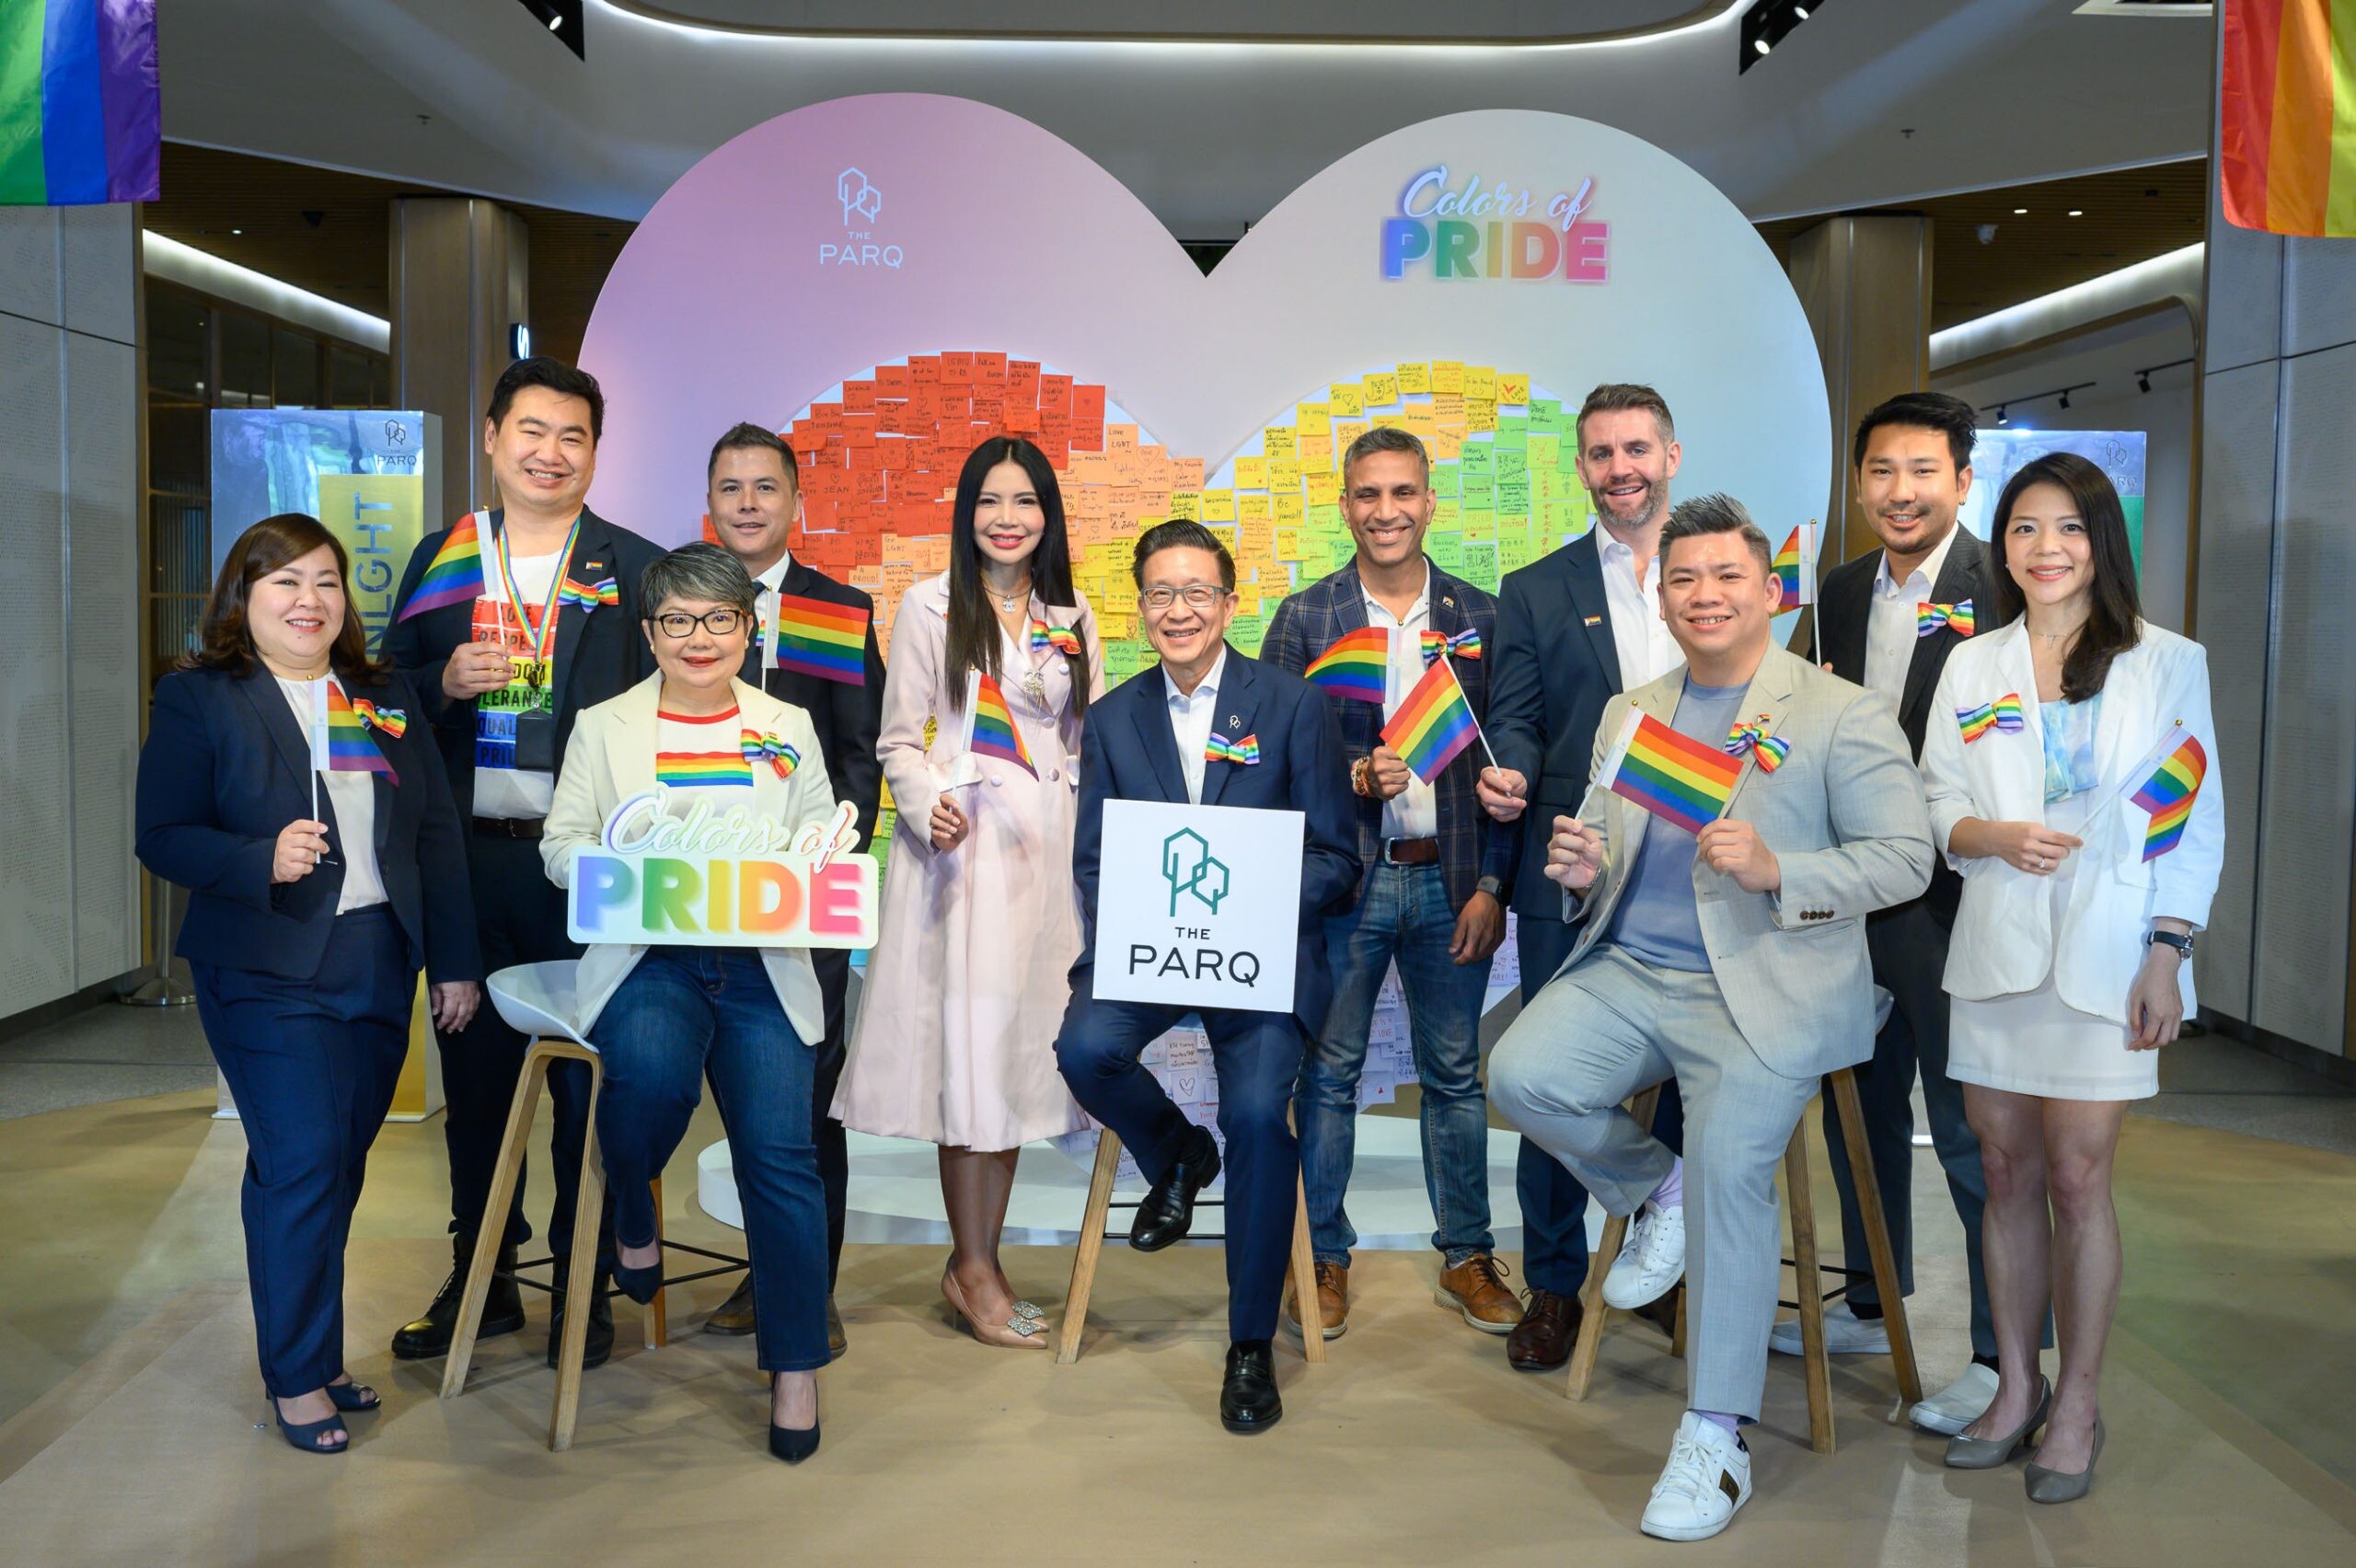 เดอะ ปาร์ค จับมือพันธมิตรธุรกิจกลุ่มผู้เช่าระดับแนวหน้า ร่วมฉลองเทศกาลไพรด์ กับแคมเปญ "Colors of Pride"